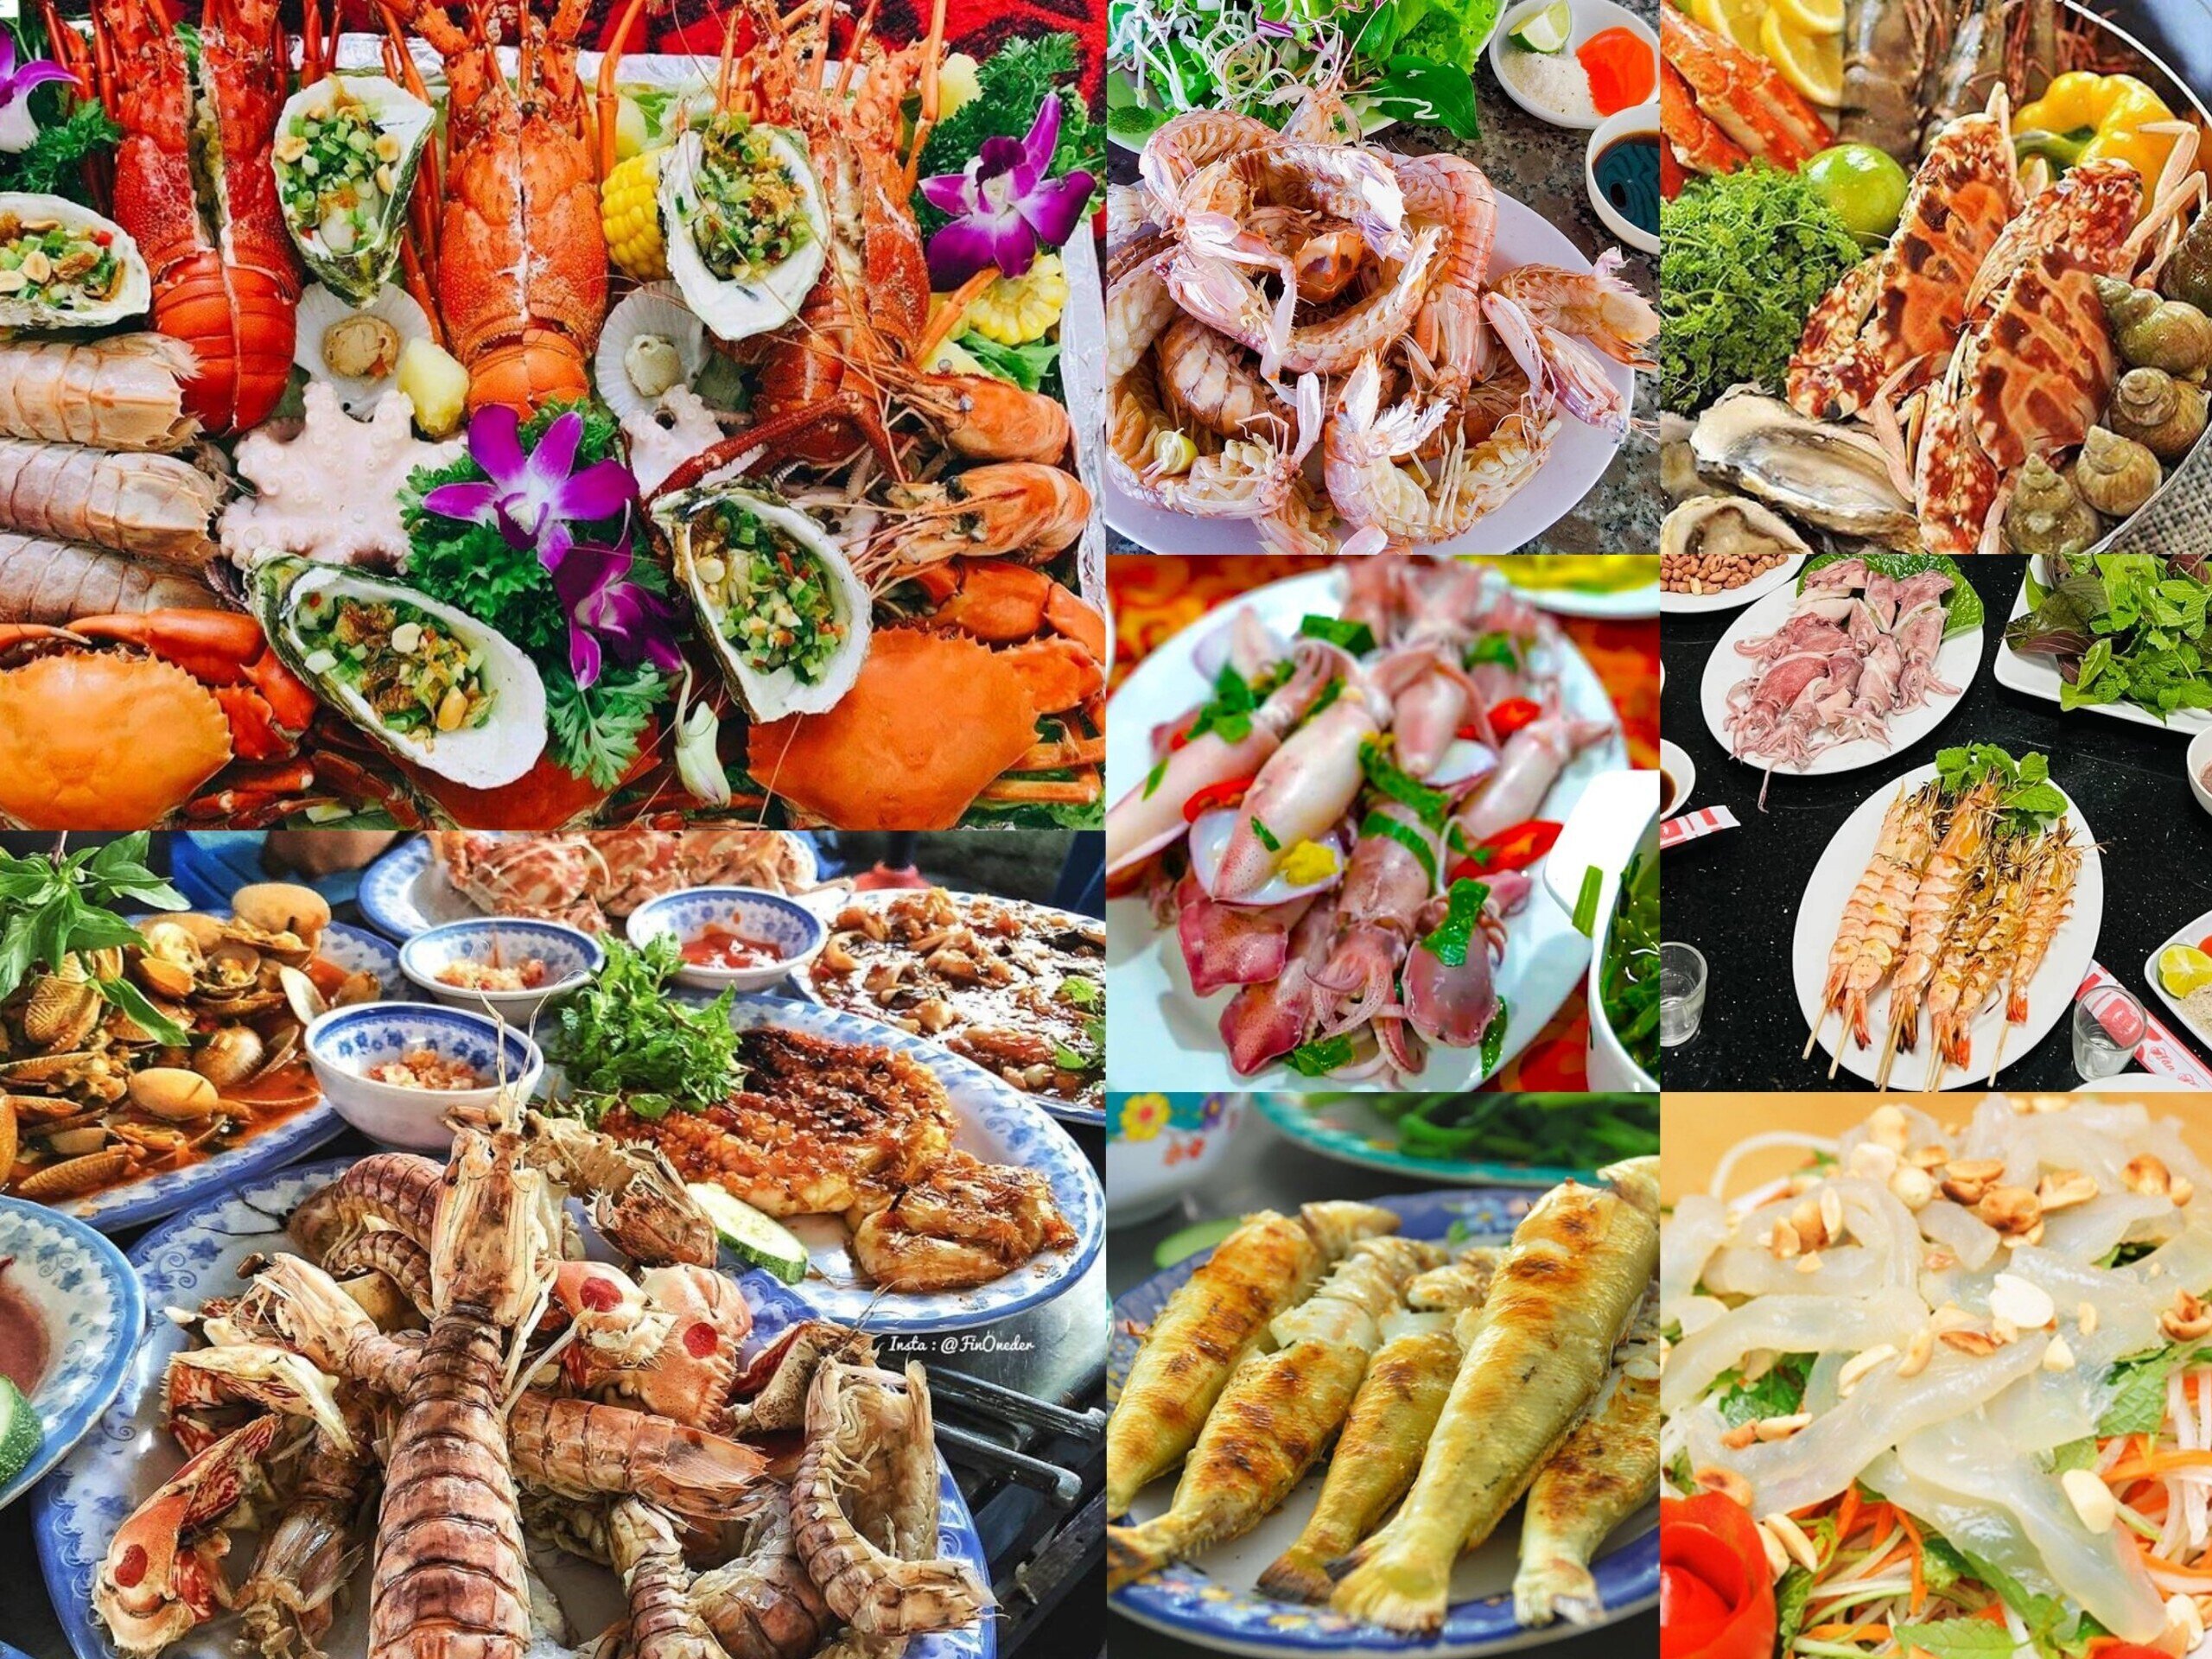 Biển Quỳnh, Nghệ An luôn có những món hải sản tươi ngon. (Ảnh sưu tầm)